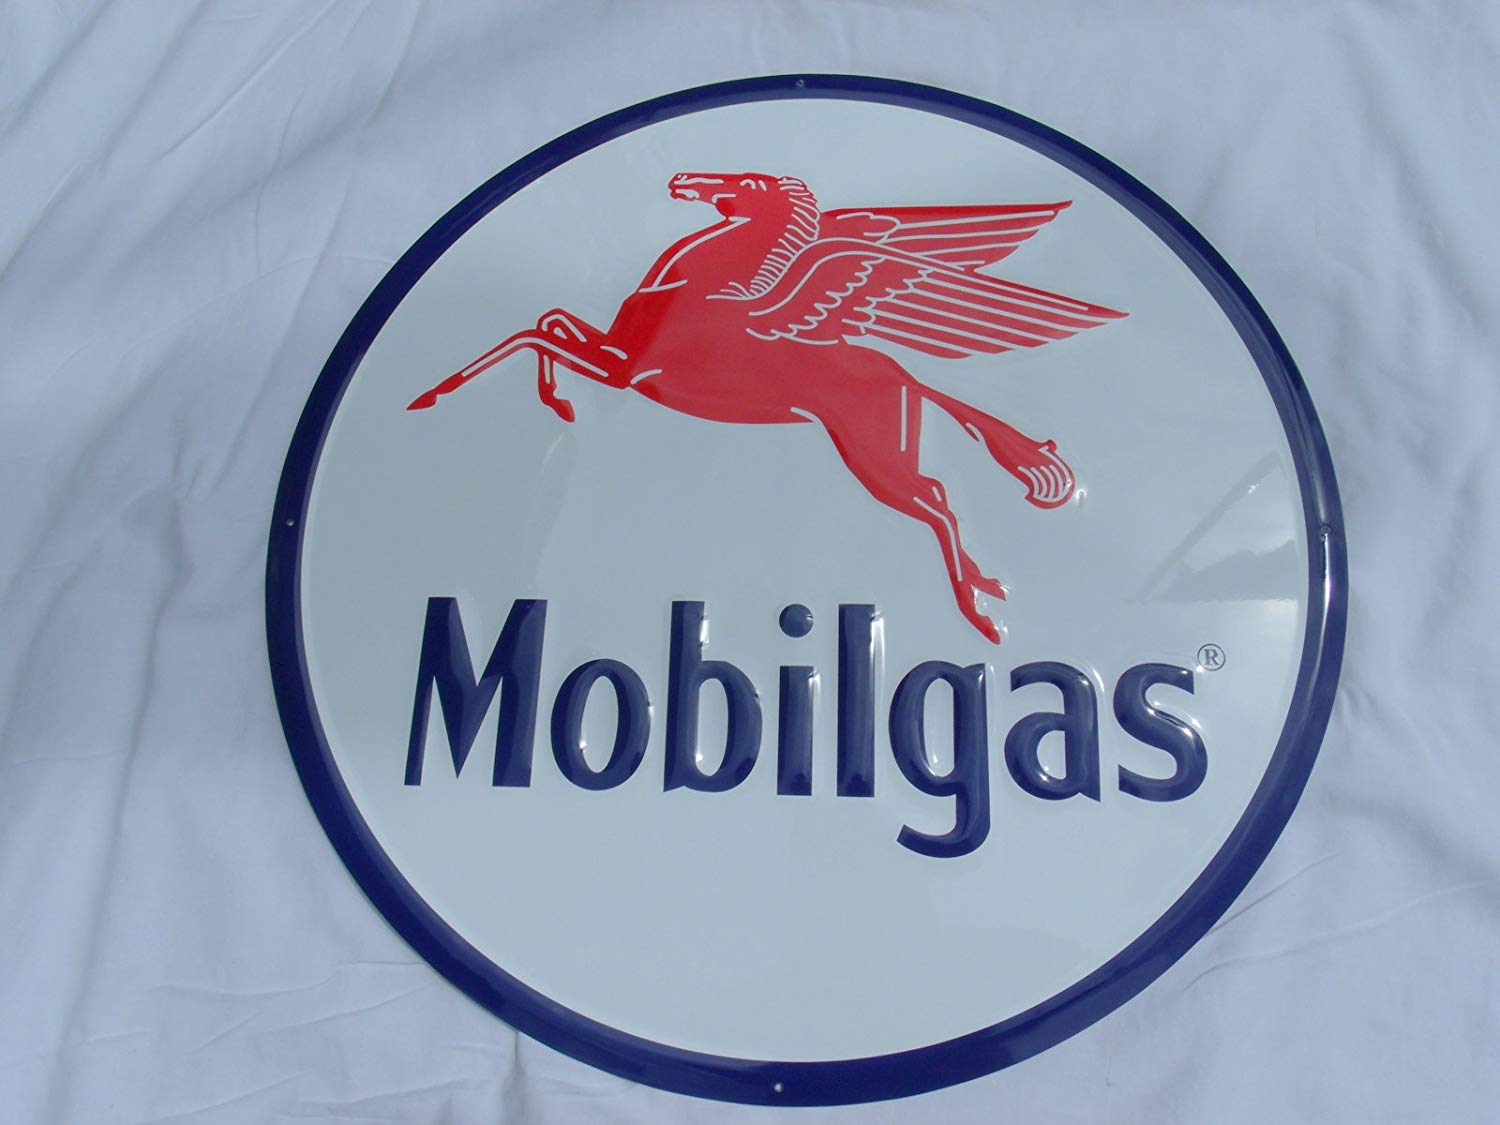 Pegasus Gas Station Logo - LARGE MOBILGAS SIGN, MOBIL GAS STATION ADVERTISING